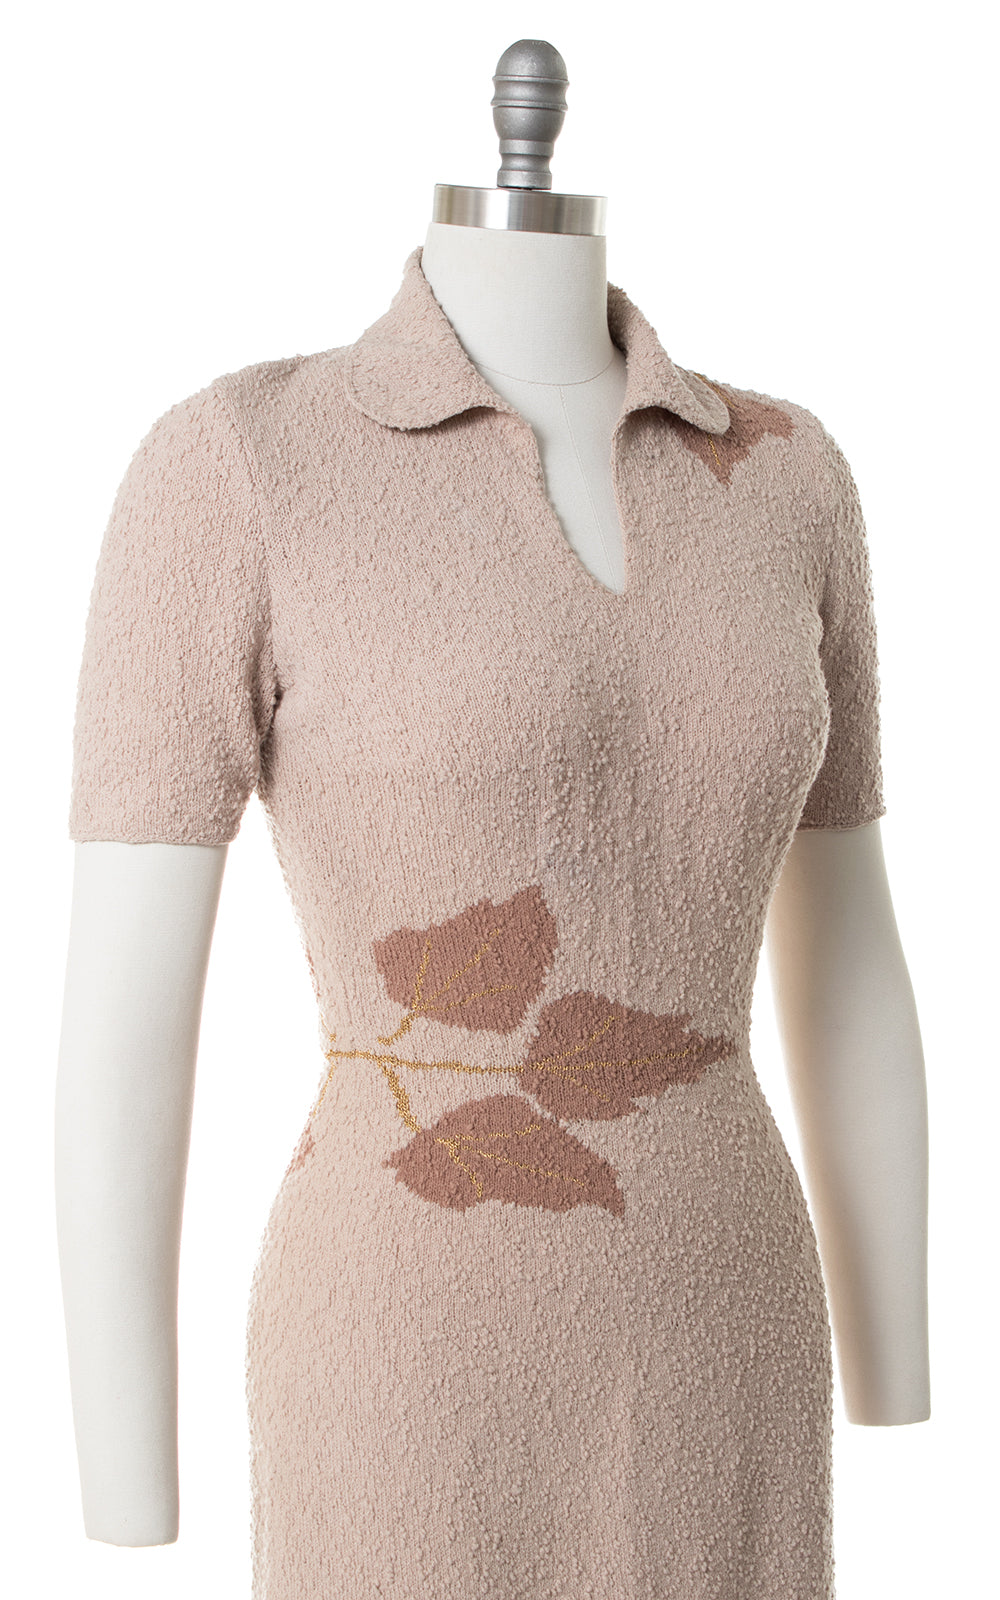 1950s Metallic Leaf Bouclé Knit Wool Sweater Dress